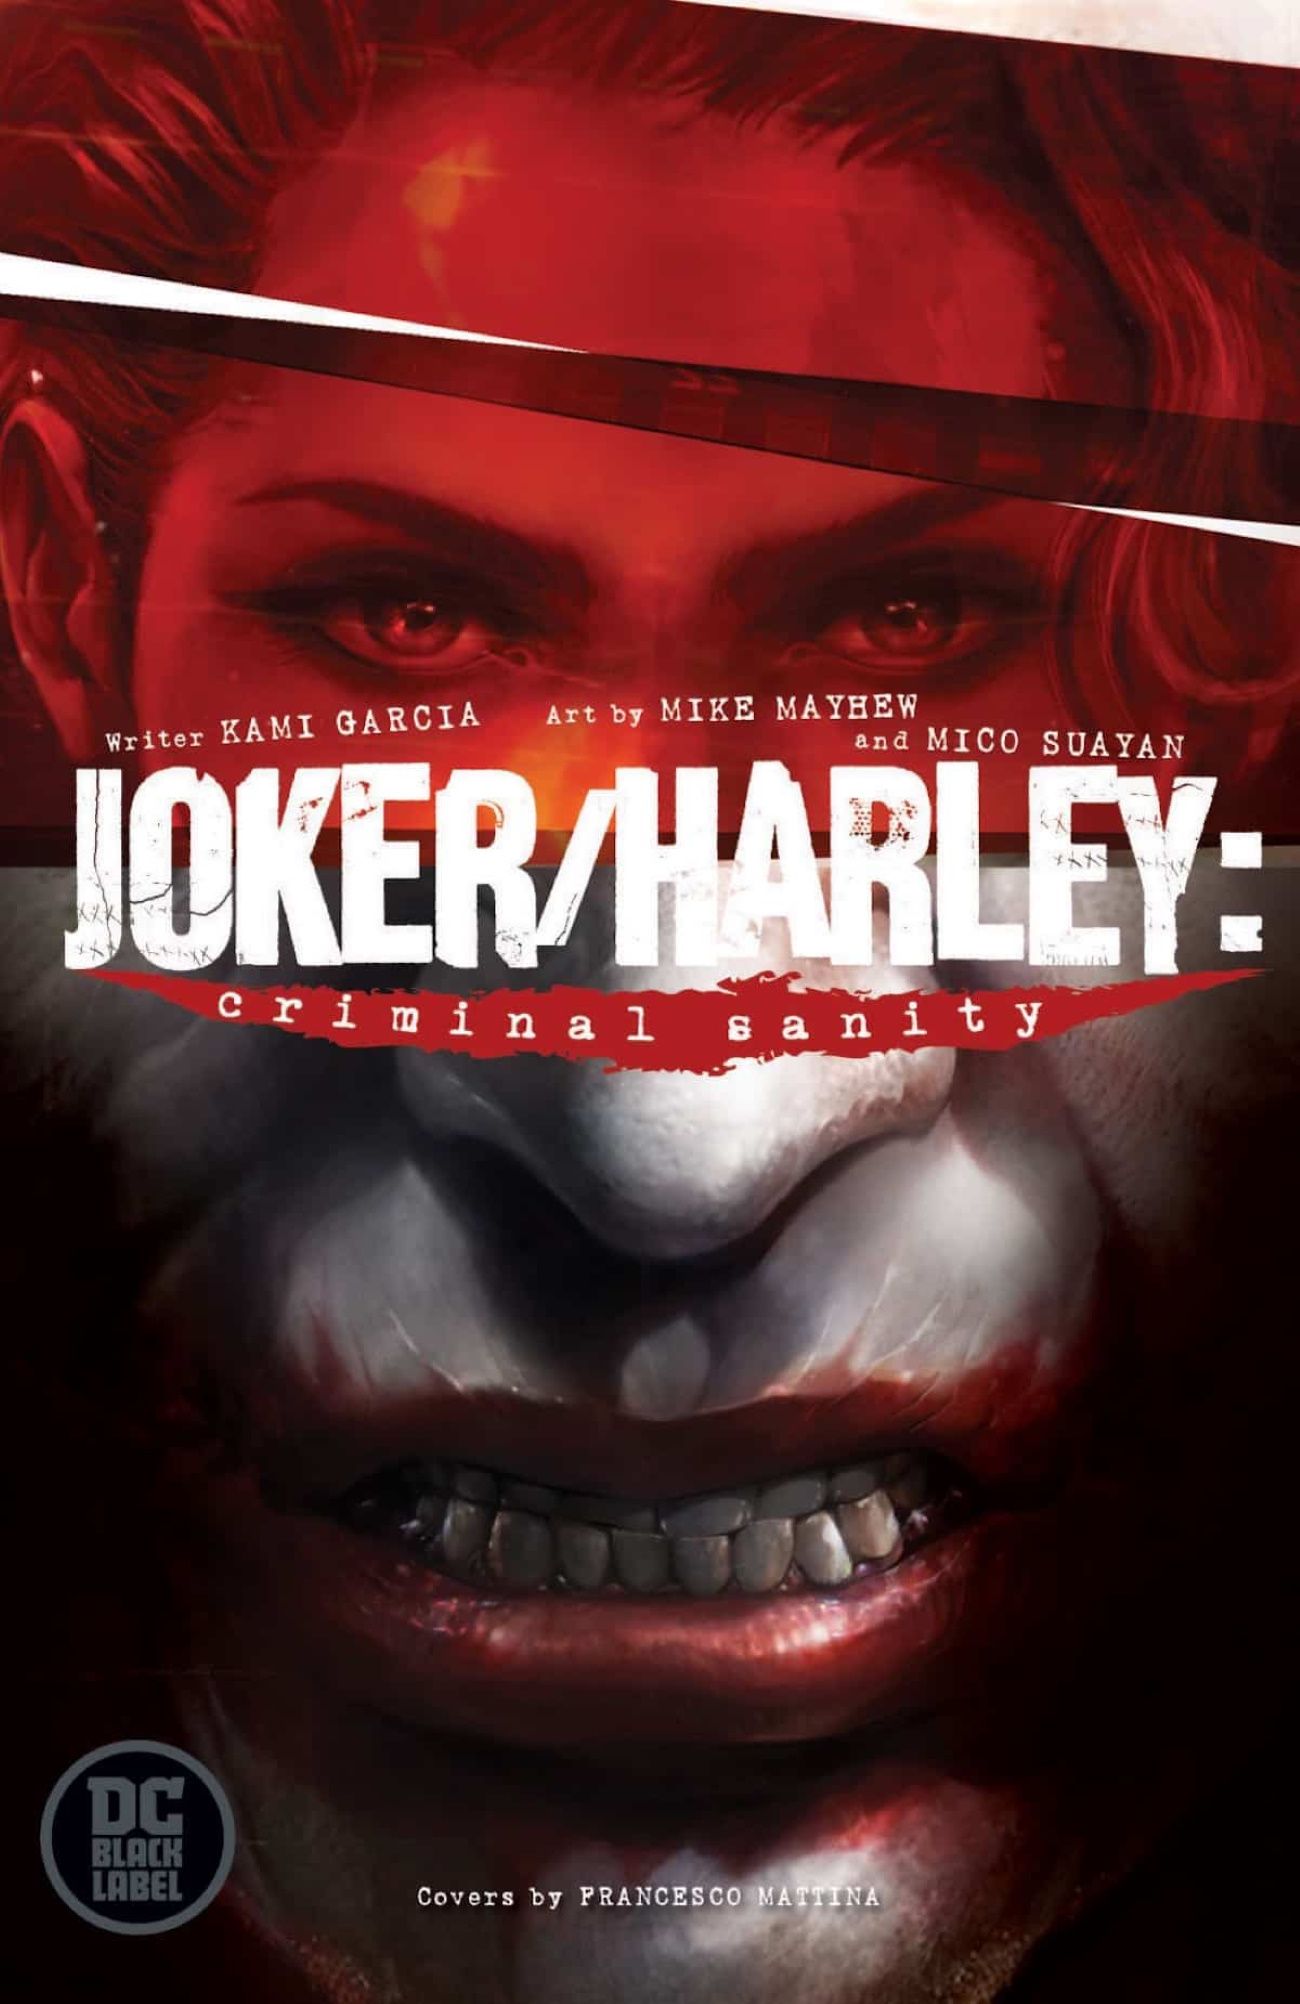 Harley Quinn & Joker Meet MINDHUNTER in Mature New Series